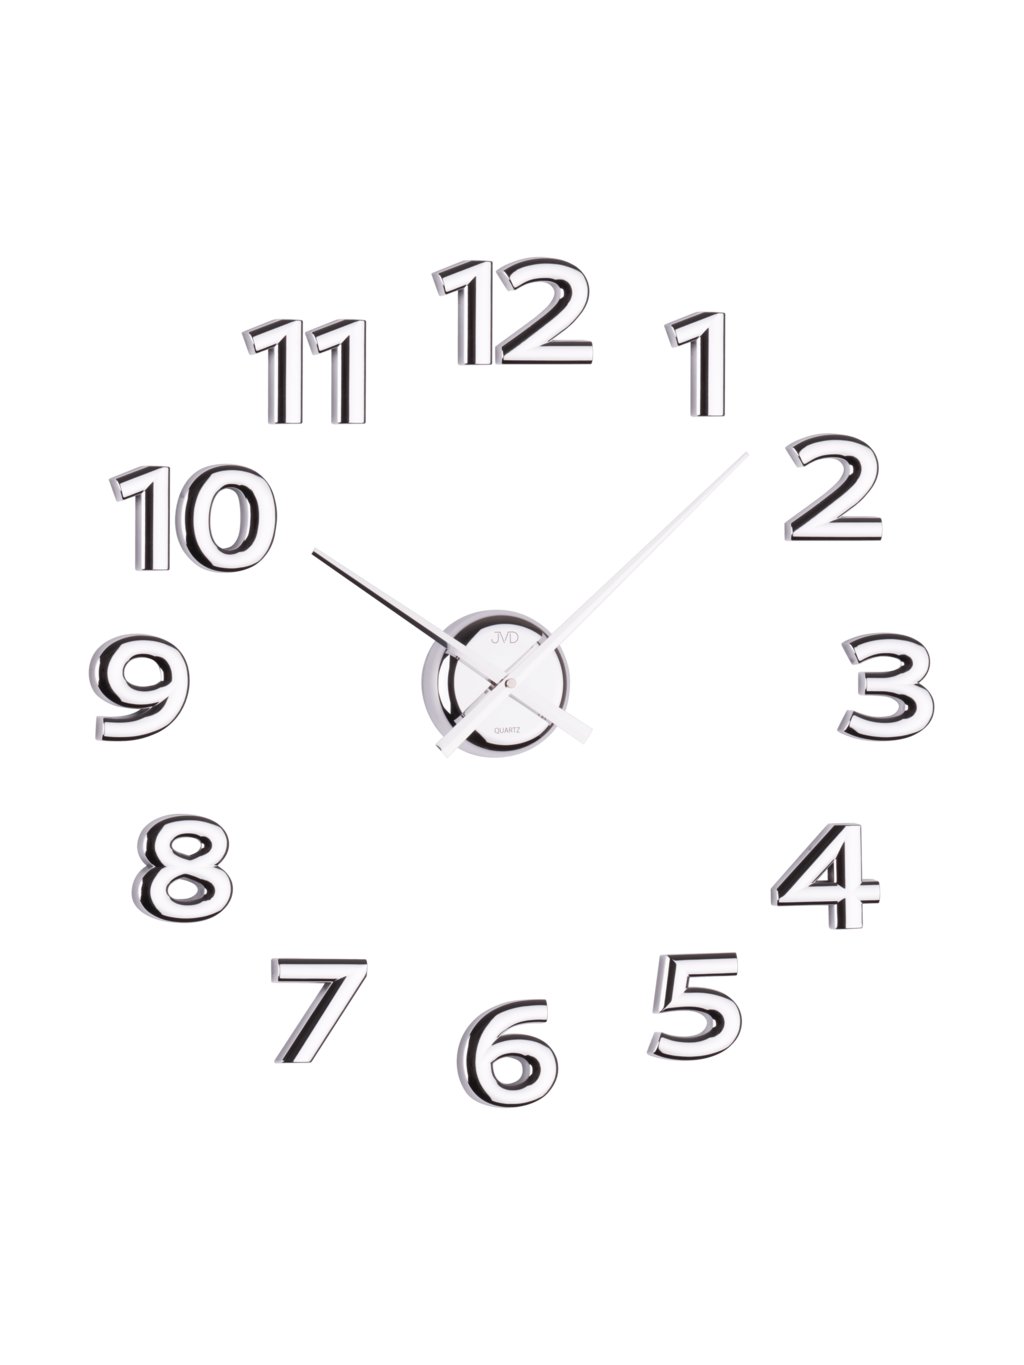 14 35 на часах. Часы на лист а4 с прозрачными цифрами. Шаблоны офисных часов распечатать. Шаблоны часов распечатать Формат а4 для печати.